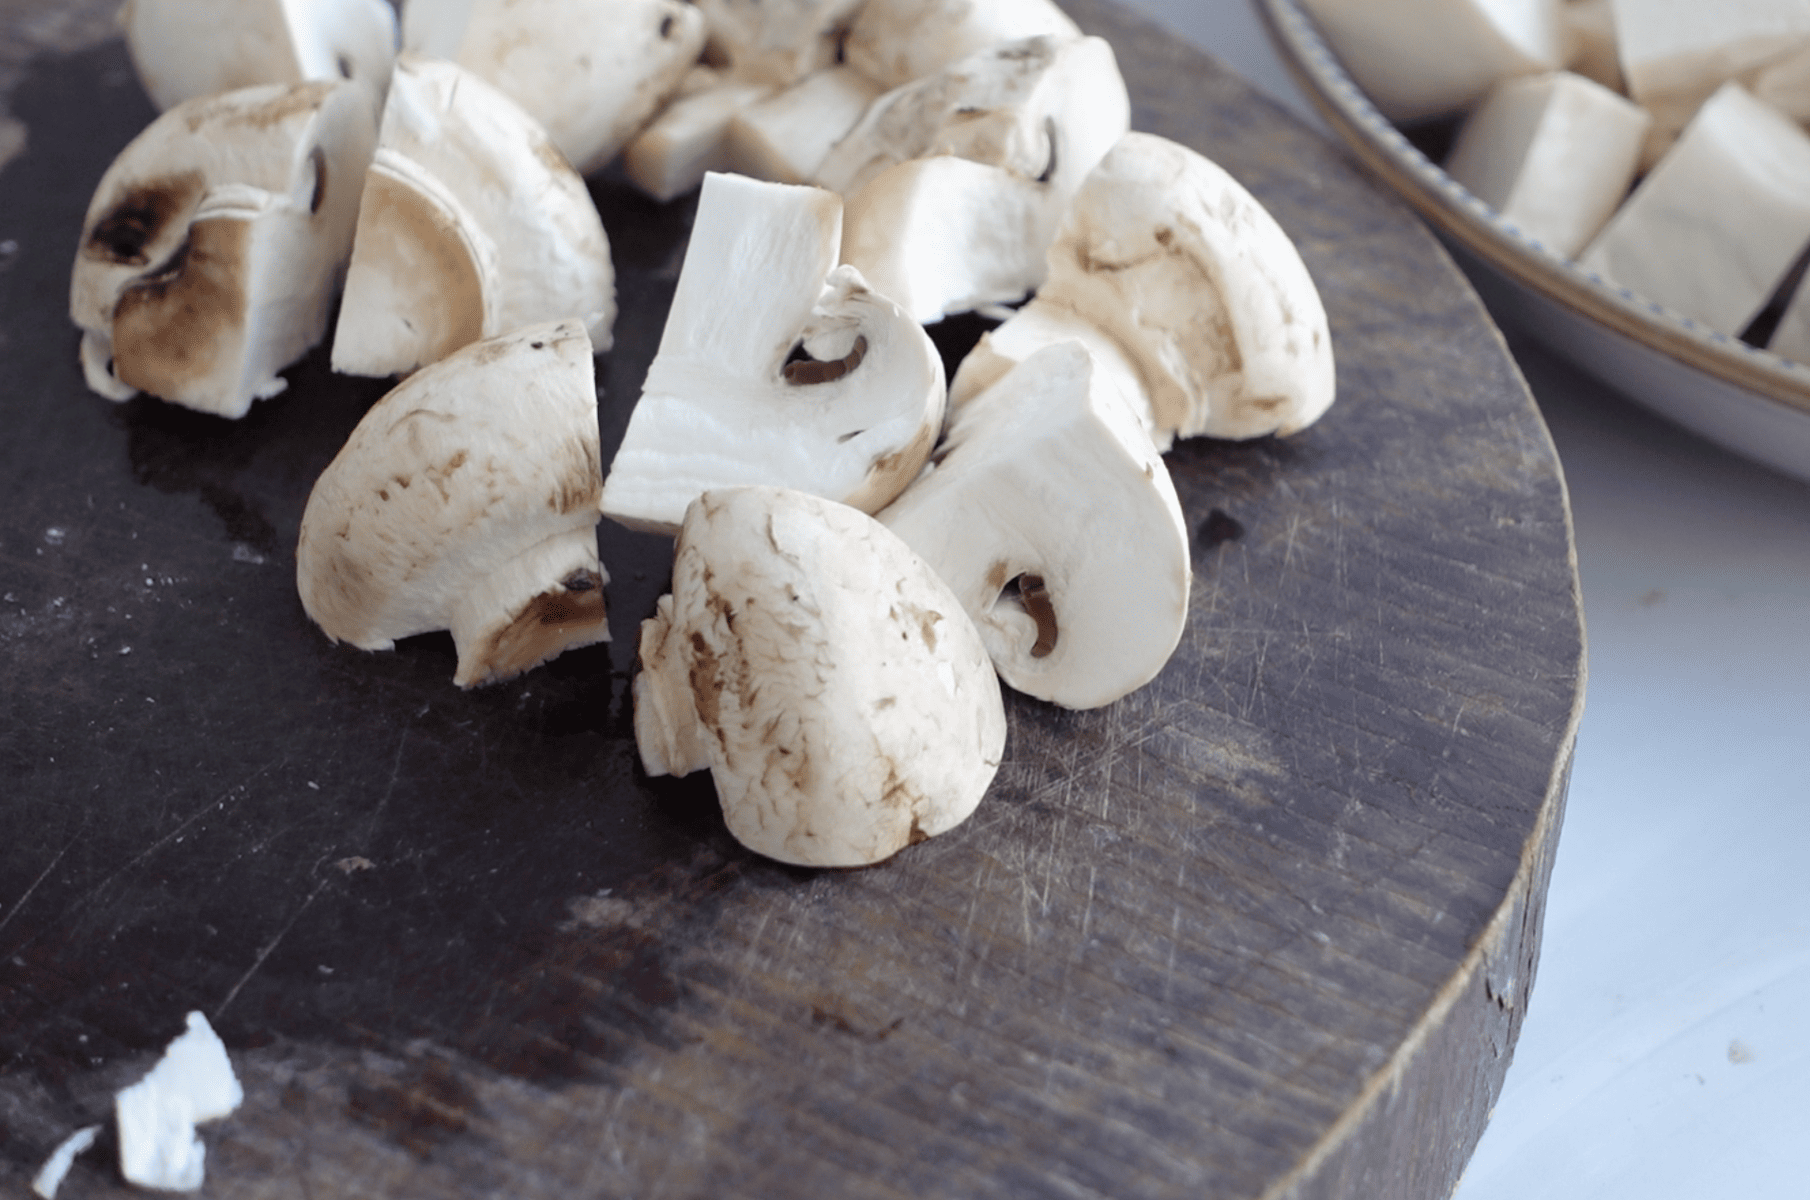 Cut mushrooms